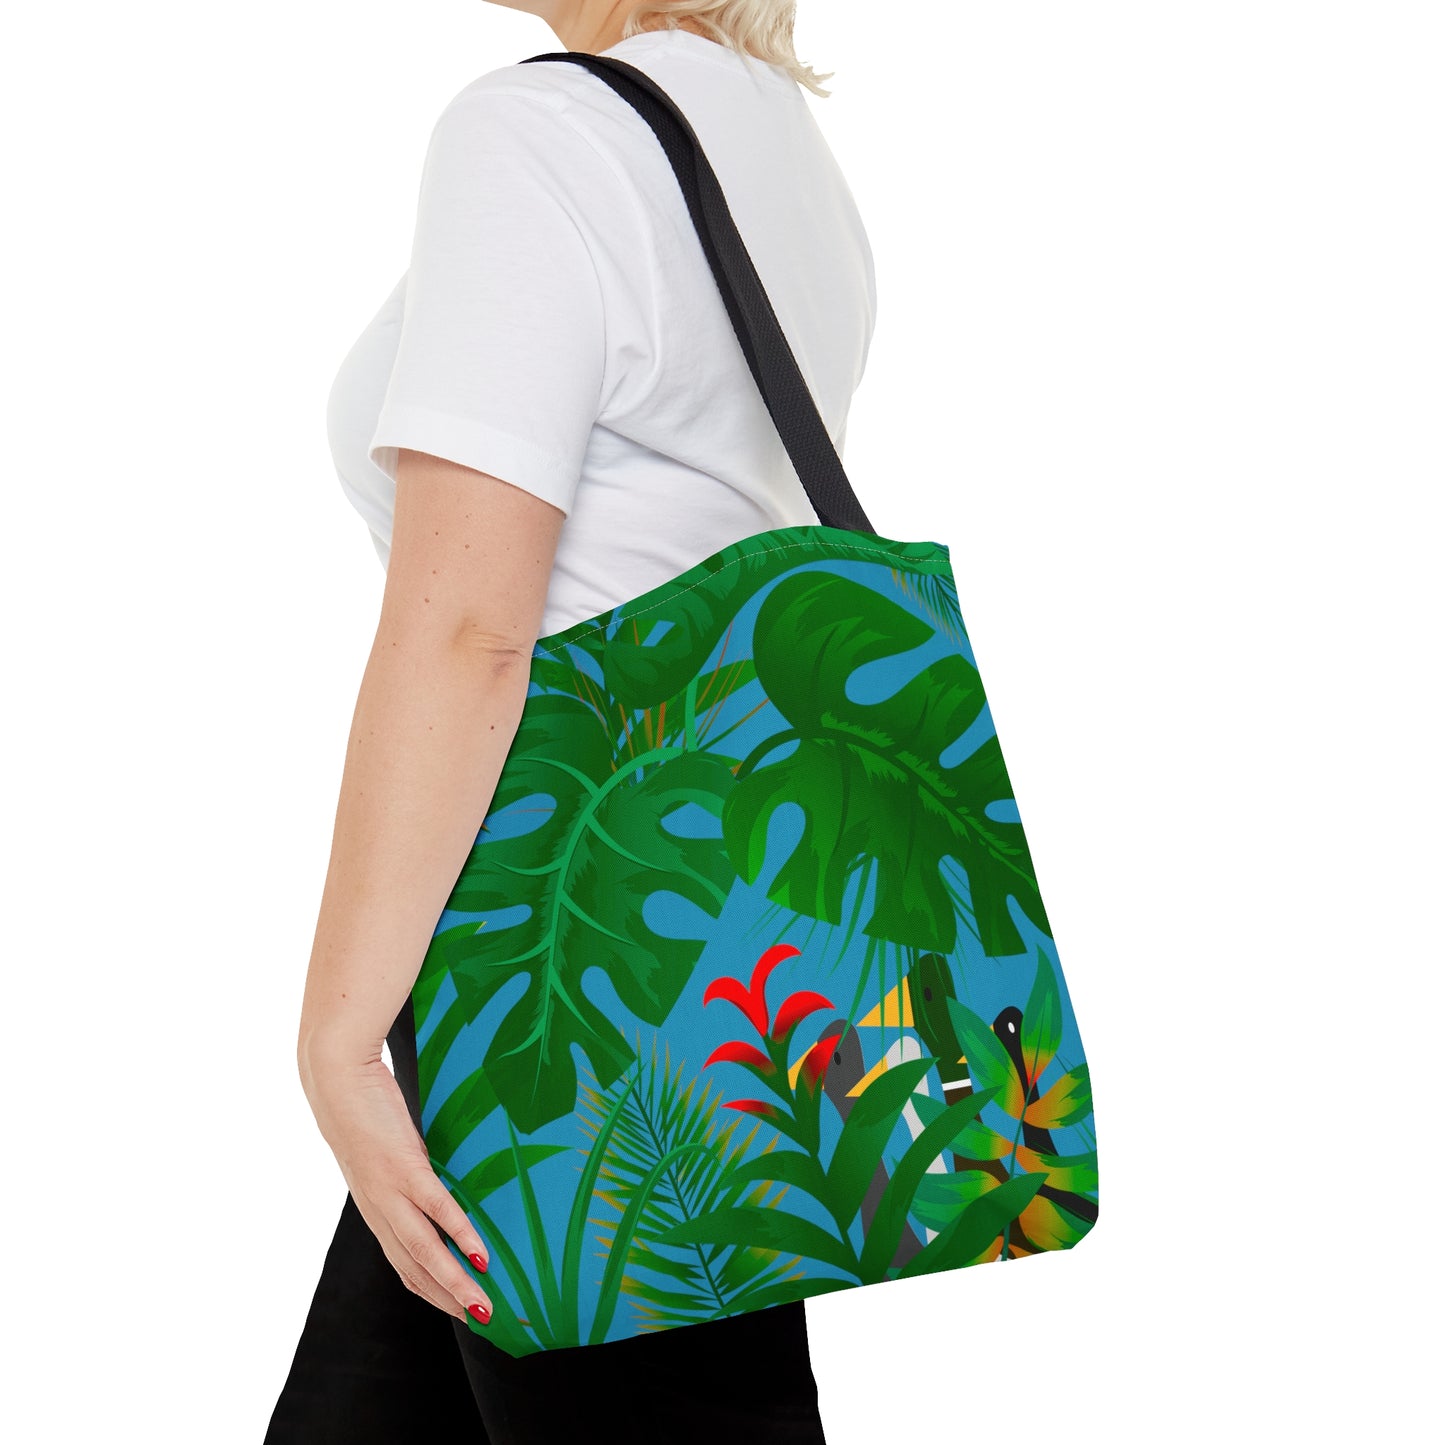 Tropical Hideaway - Tote Bag